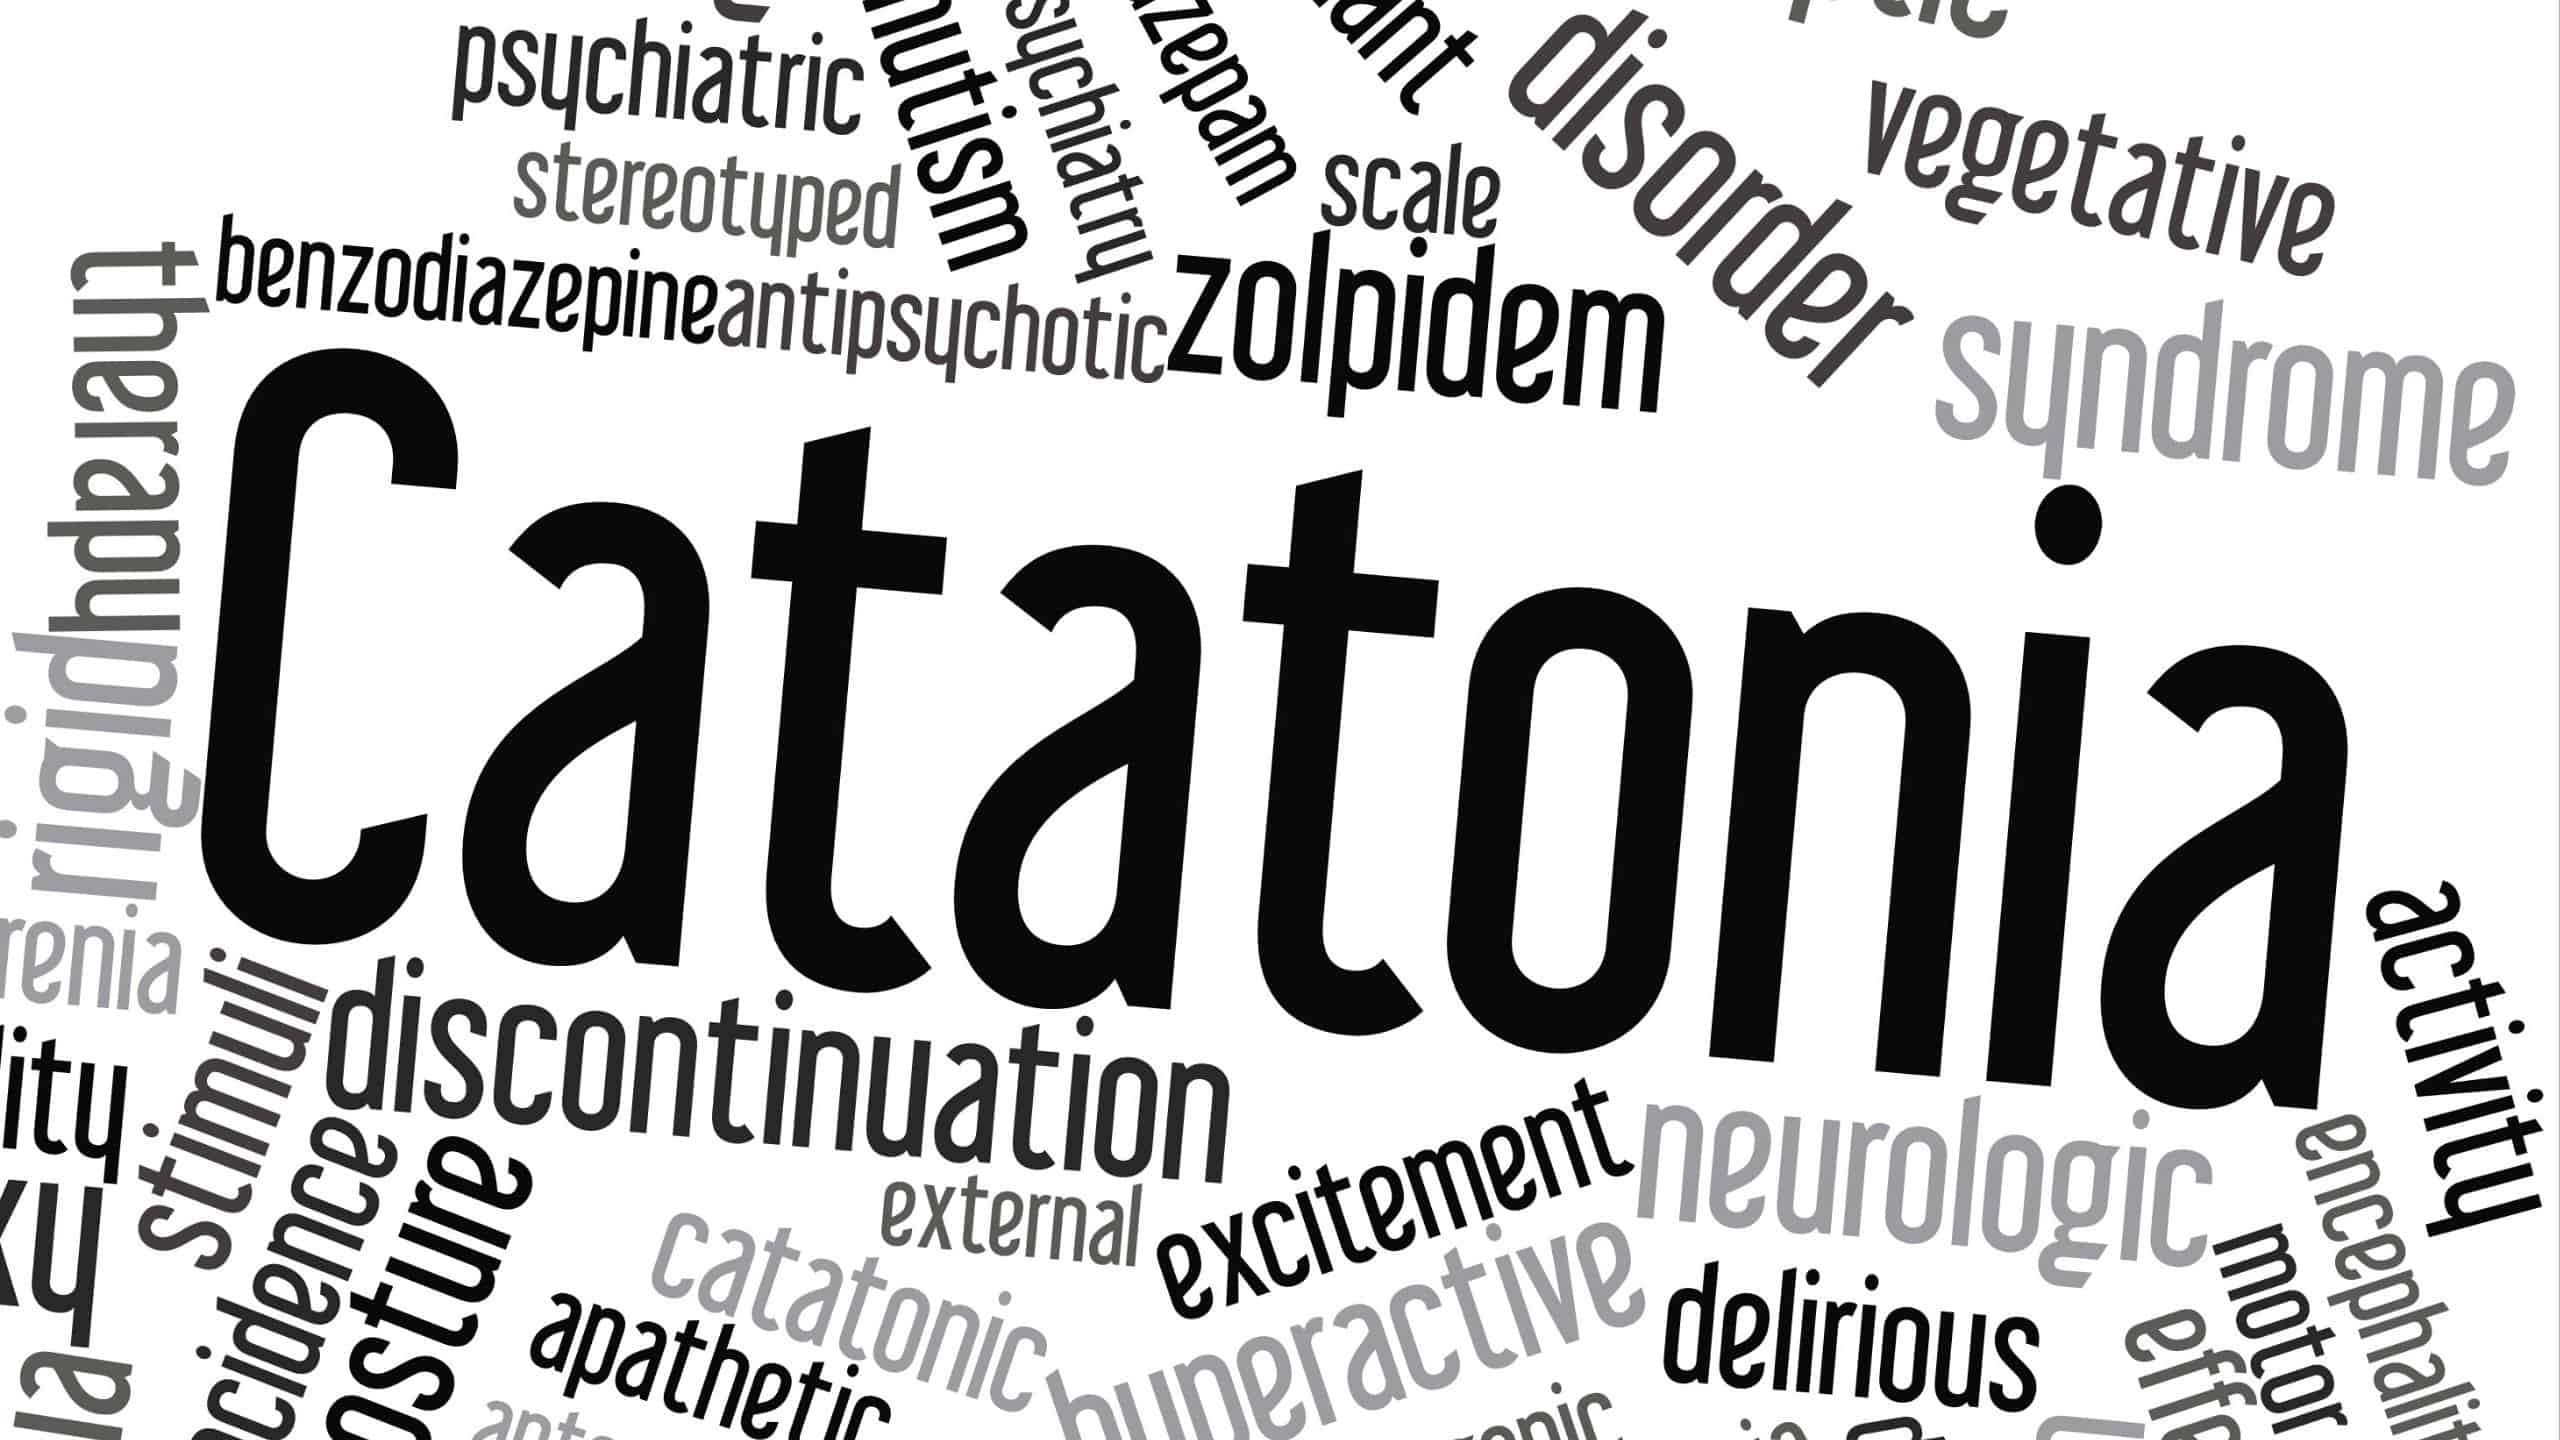 catatonia, autism